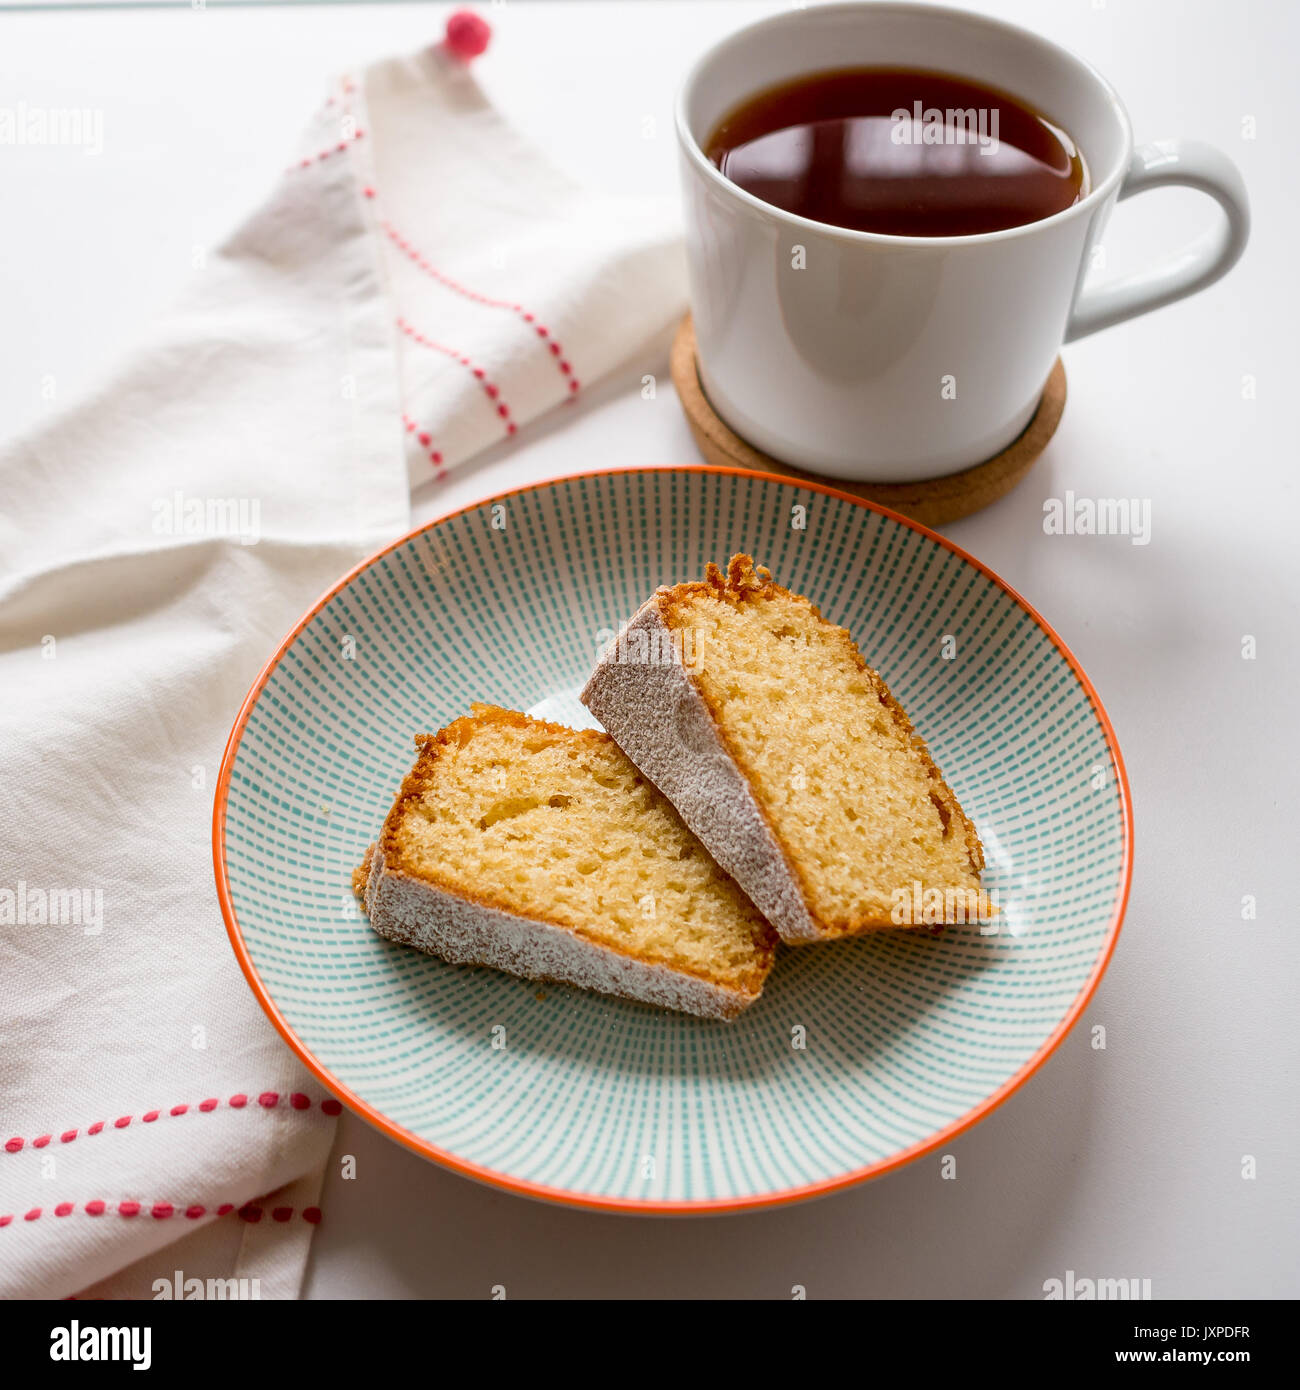 Tasse Kaffee und zwei Scheiben Biskuit in einer Platte auf einem weißen Tisch mit einem weißen und roten Küchenhandtuch. Ansicht von oben. Quadratisches Format. Stockfoto